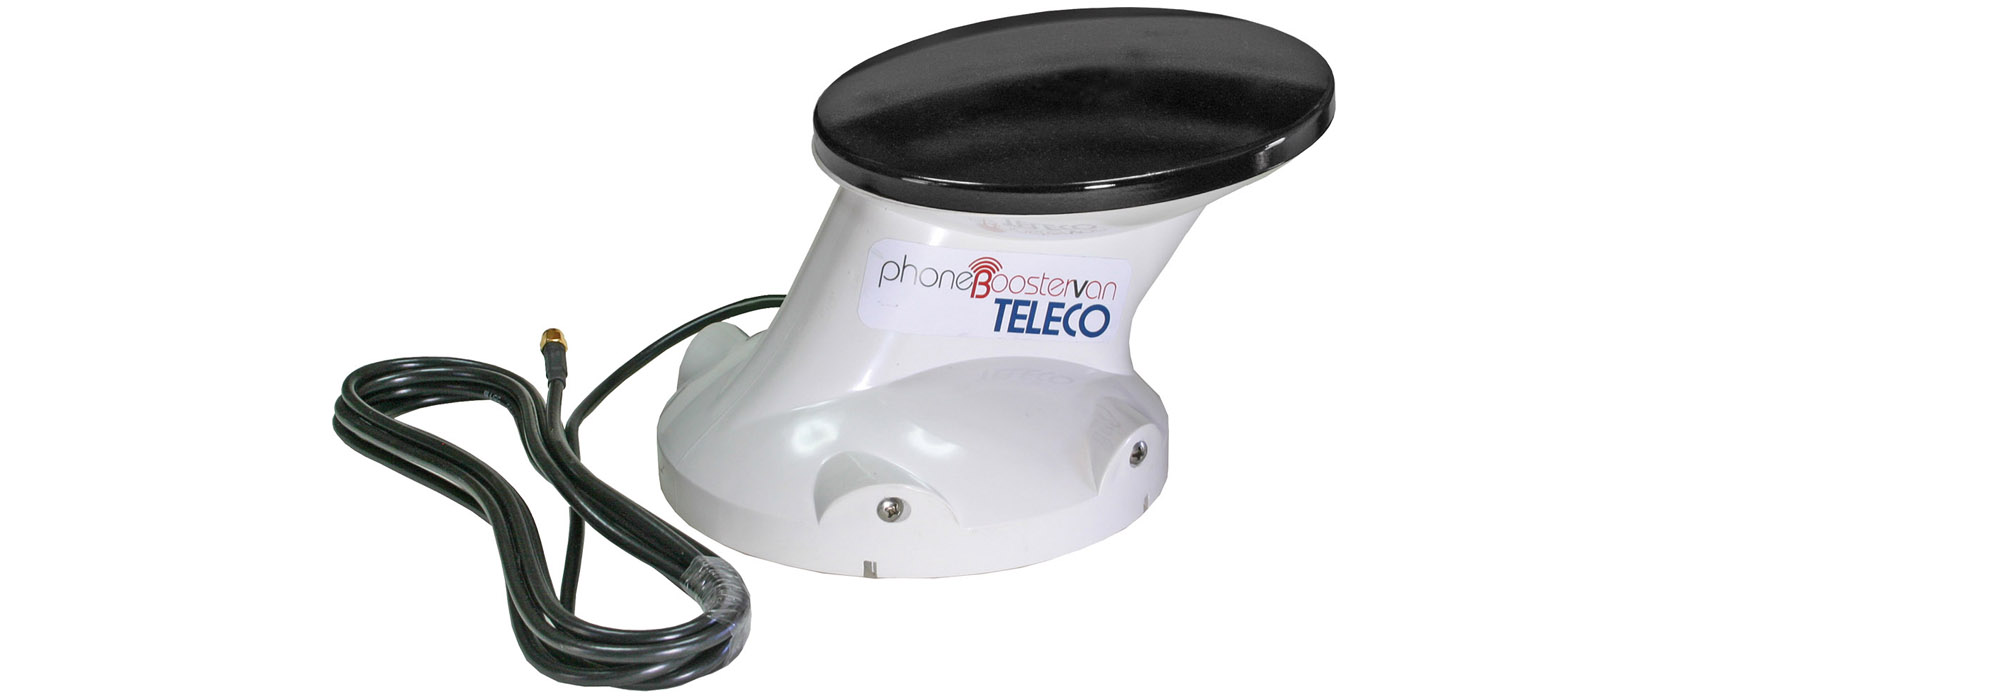 TELECO PhoneBoosterVan 2.0: Neue Antenne sorgt für noch mehr Empfangsleistung 